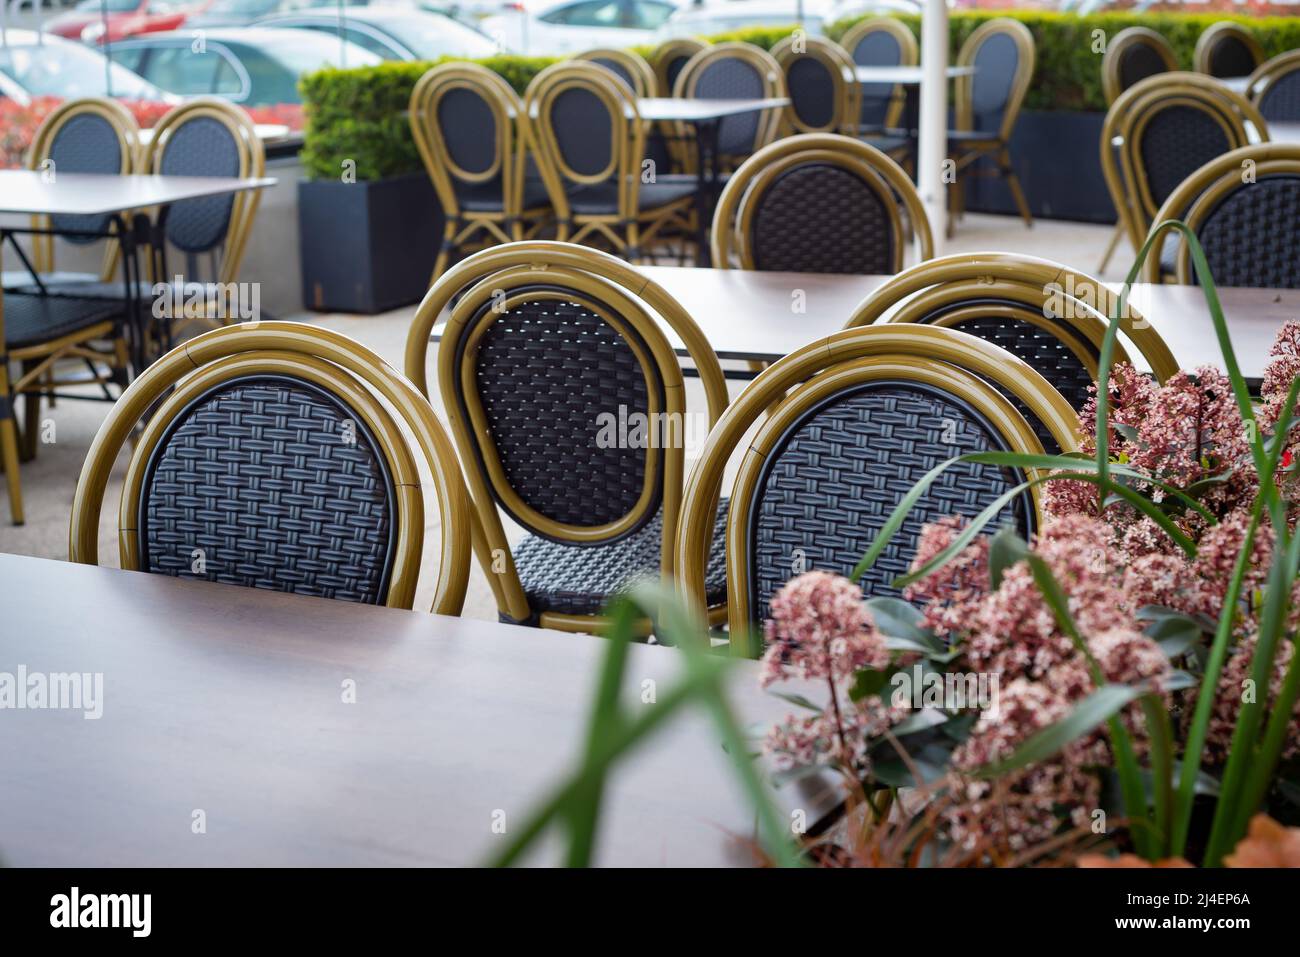 Reinigen Sie leere Tische und Stühle im Café-Restaurant im Freien, das von Pflanzen und Blumen umgeben ist. Stockfoto